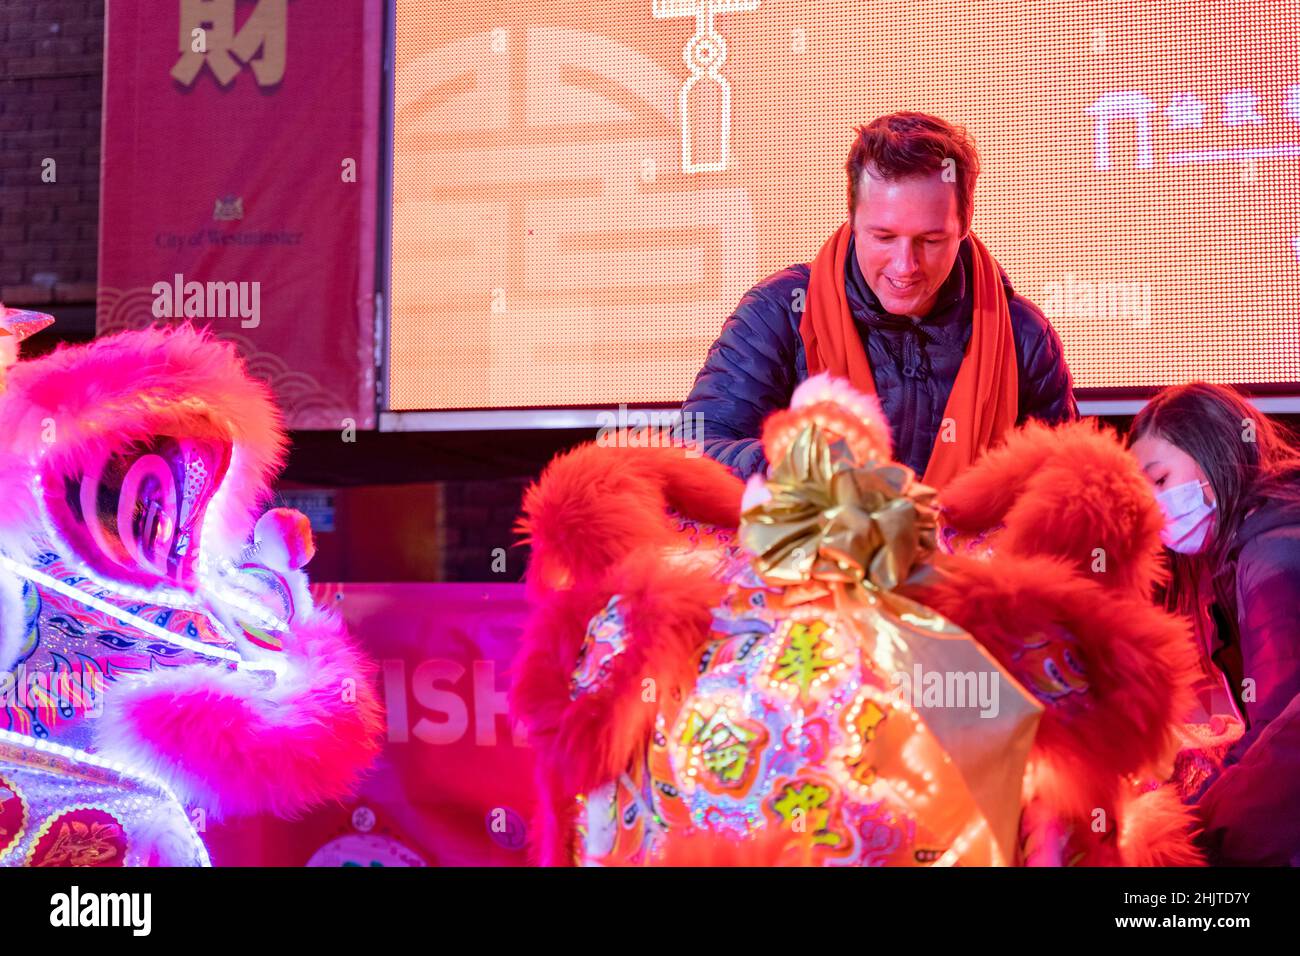 Londres Royaume-Uni 31st janvier 2022 : la colonne Nelson est illuminée en mandarin à la veille du nouvel an chinois pour souhaiter aux gens un nouvel an chinois heureux (nouvel an lunaire).Les fêtes habituelles du nouvel an chinois ont été annulées cette année.Une petite cérémonie de danse du lion et du dragon a été exécutée à la place Trafalgar de Londres aux Londoniens, aux vip et aux dignitaires, aux représentants du maire de Londres, lord Mayor of Westminster.Credit: Xiu Bao/Alamy Live News Banque D'Images